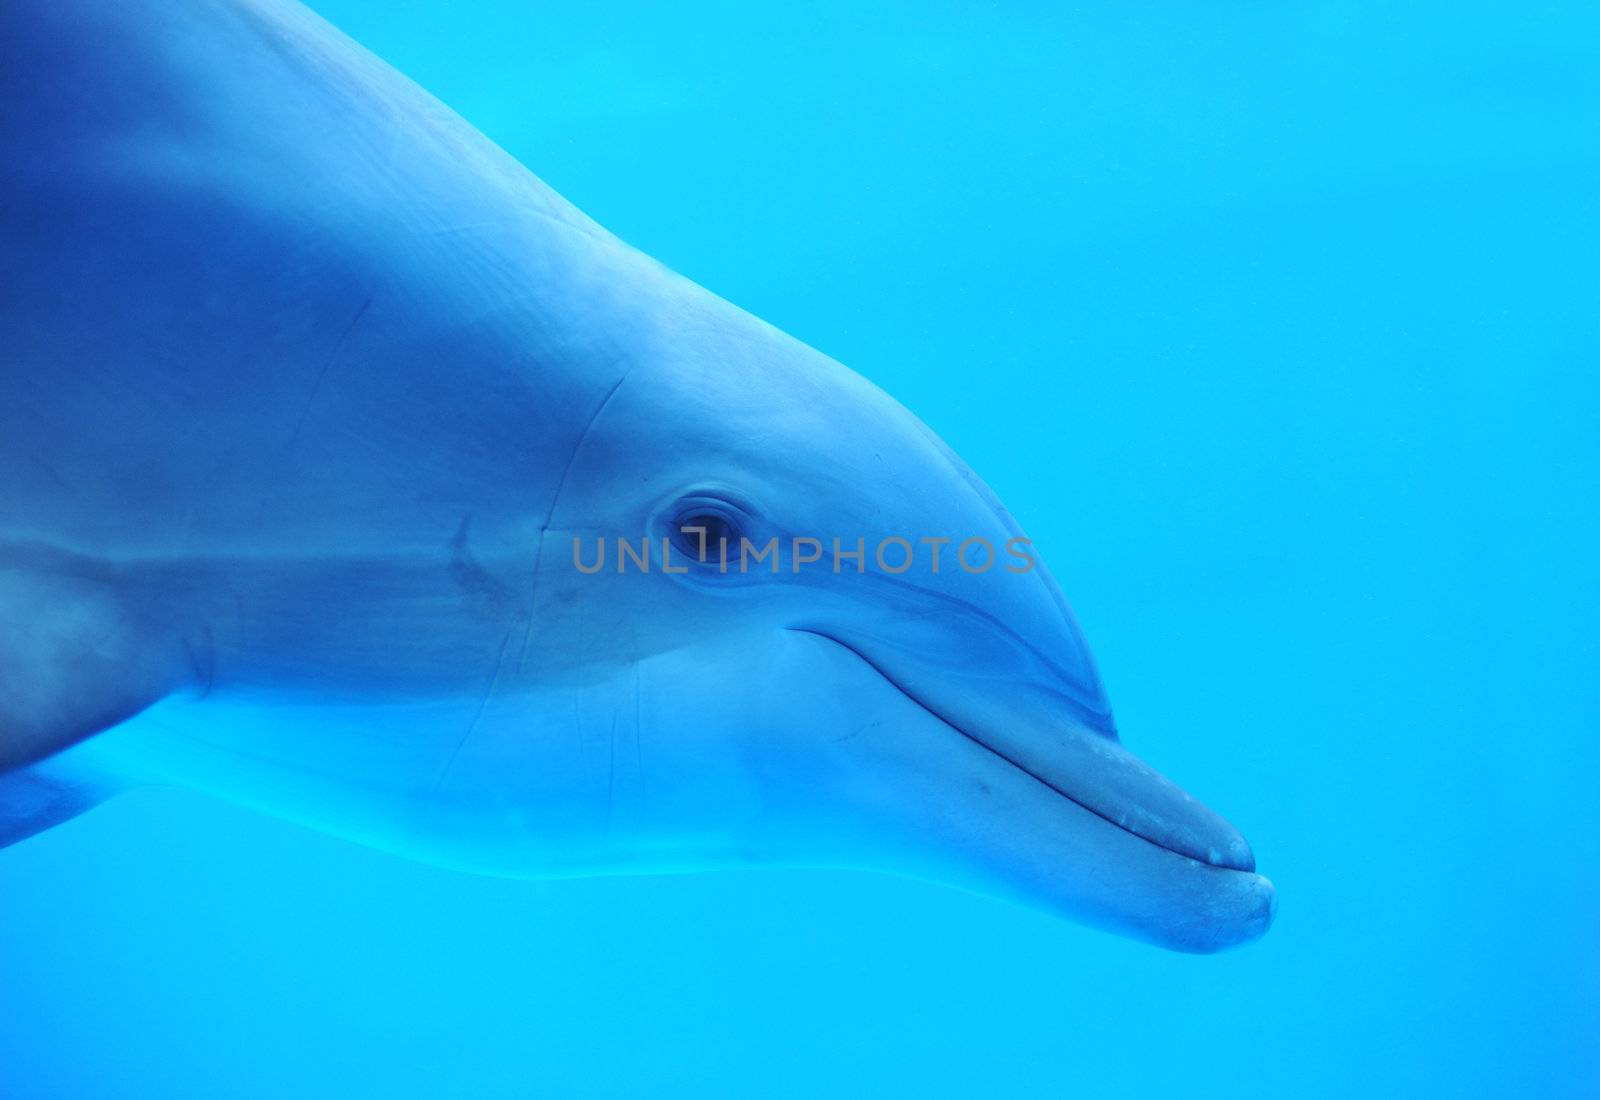 dolphin by cynoclub